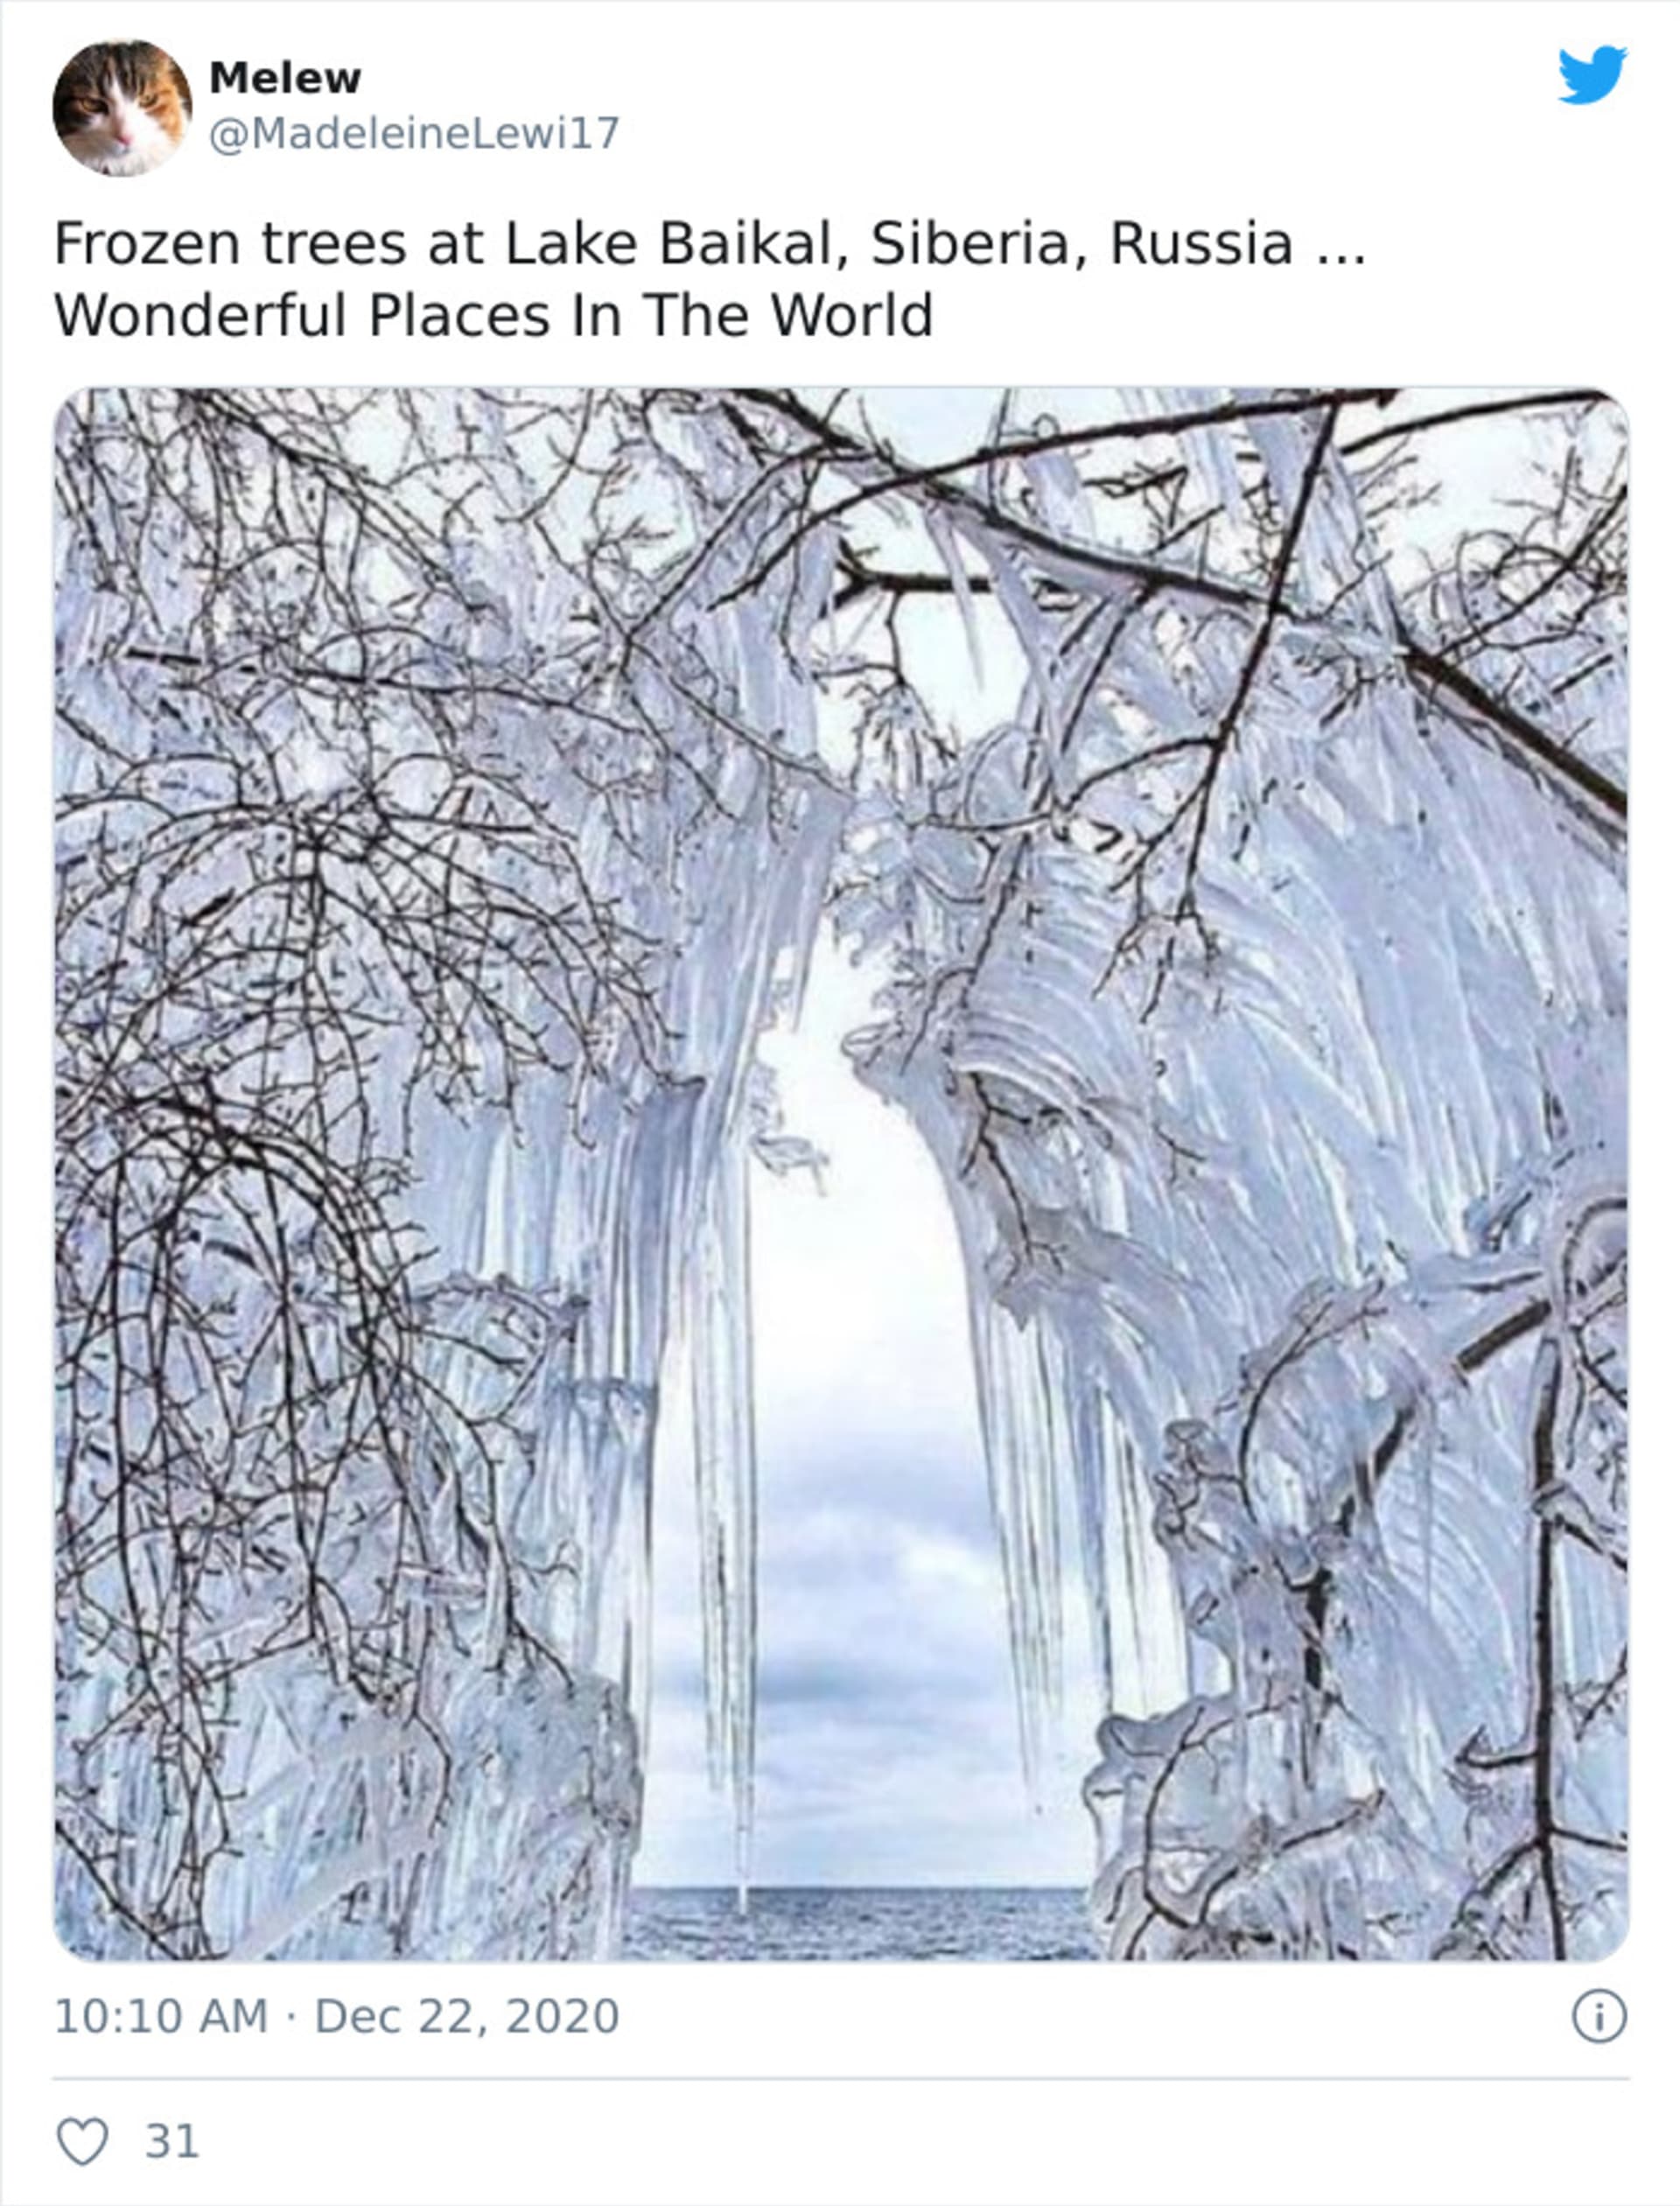 Mrazivé fotky z nejchladnějších míst na světě